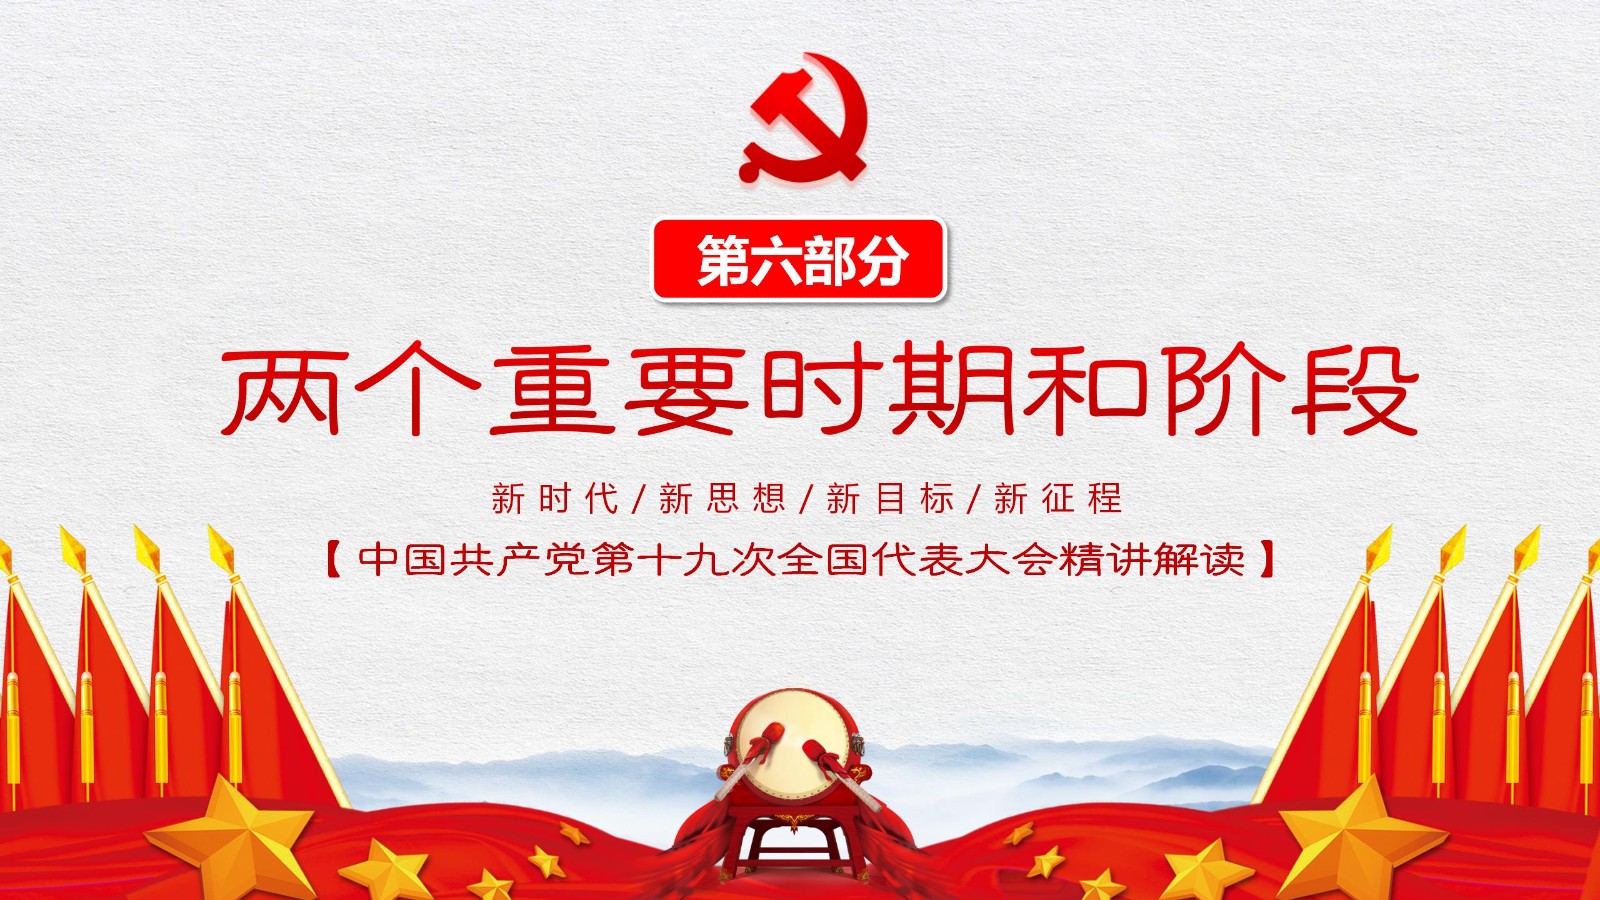 中国特色社会主义旗帜模板40